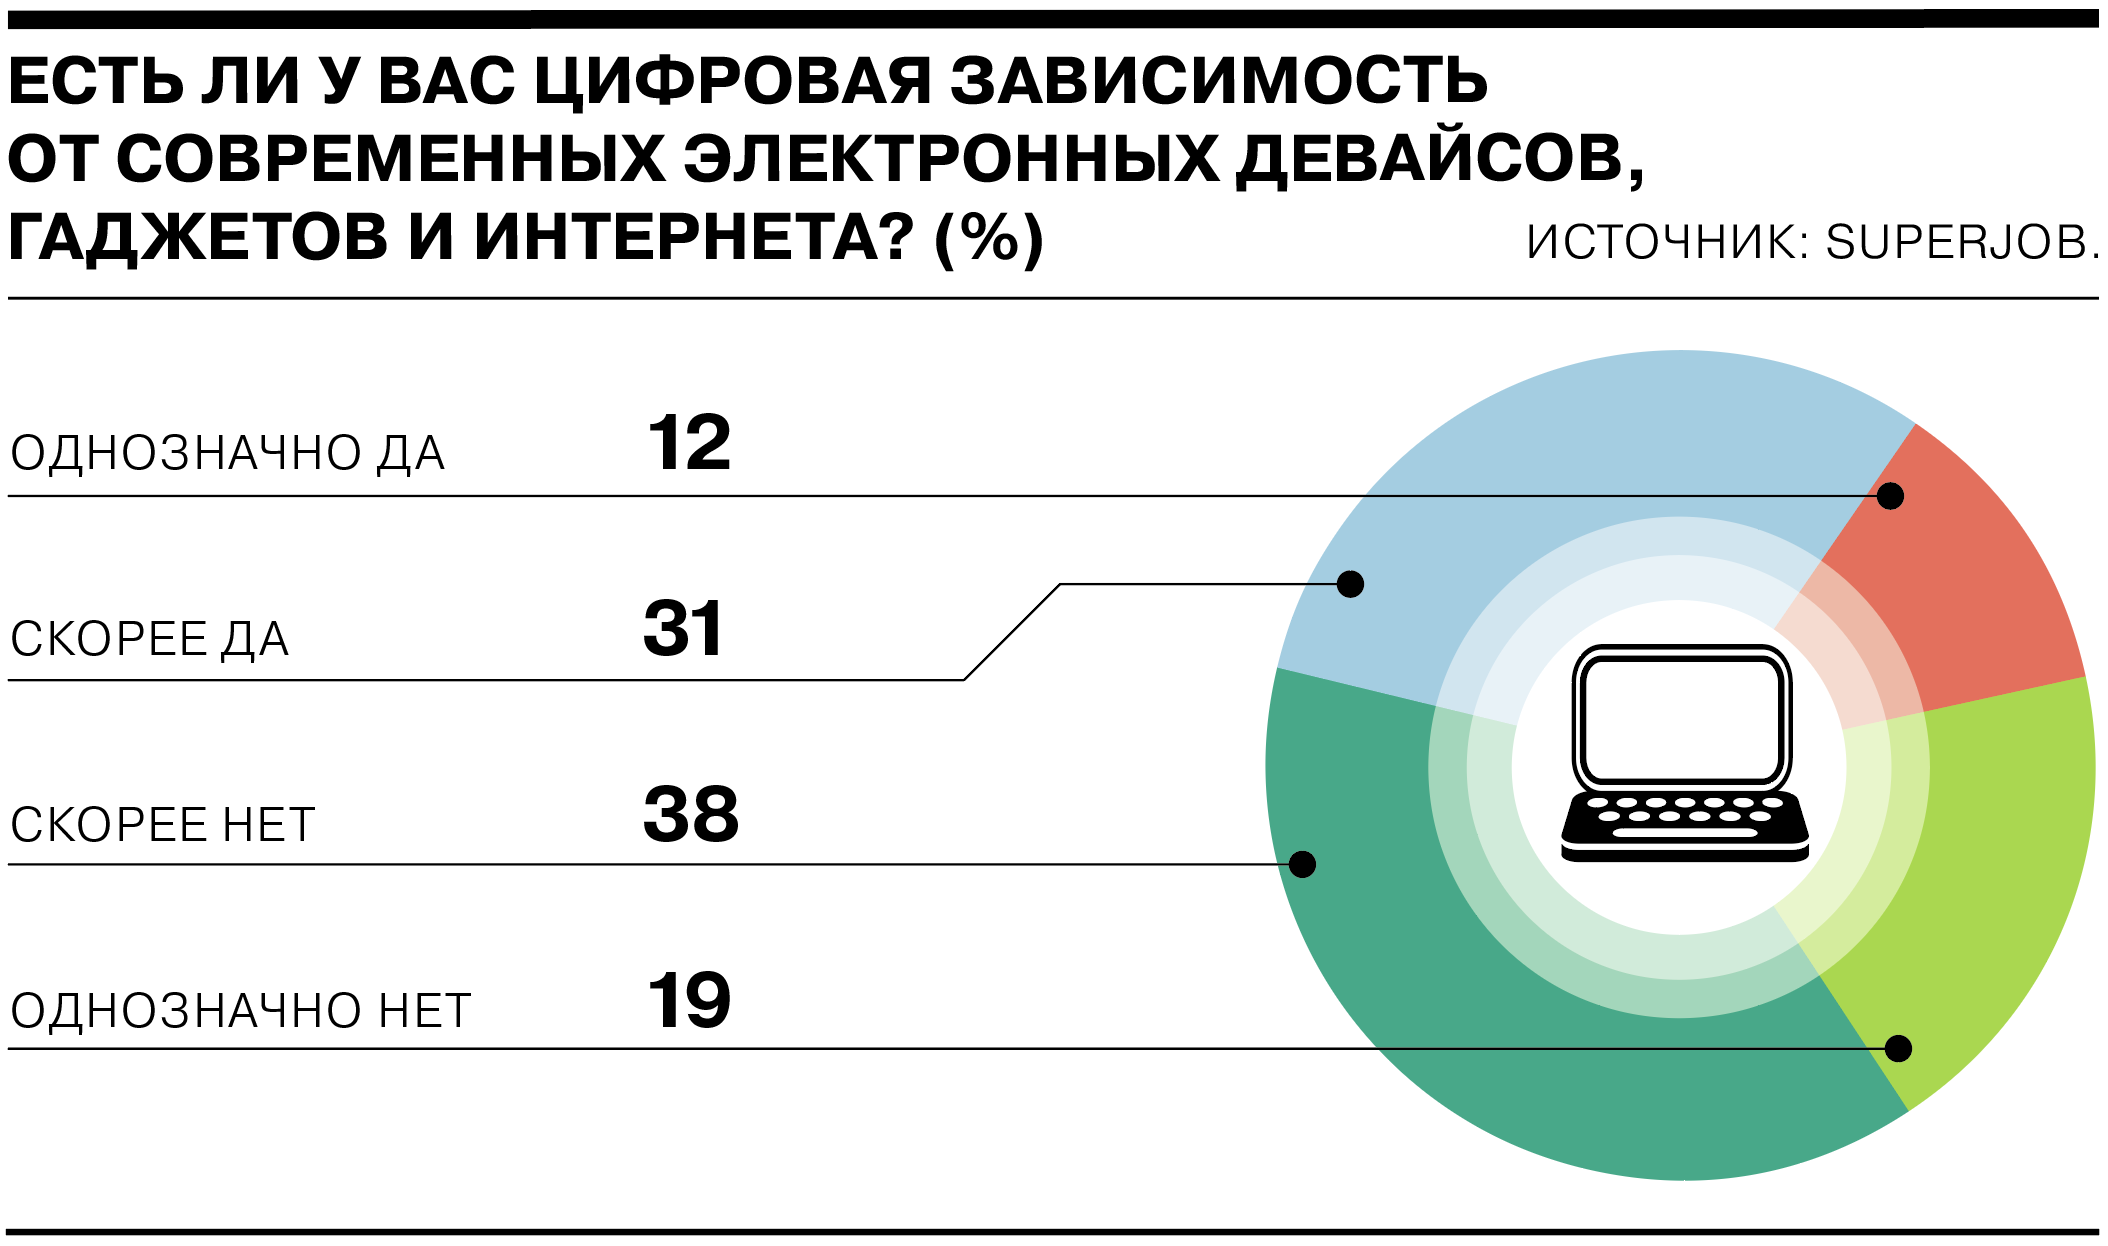 4 из 10 россиян считают себя зависимыми от гаджетов и интернета